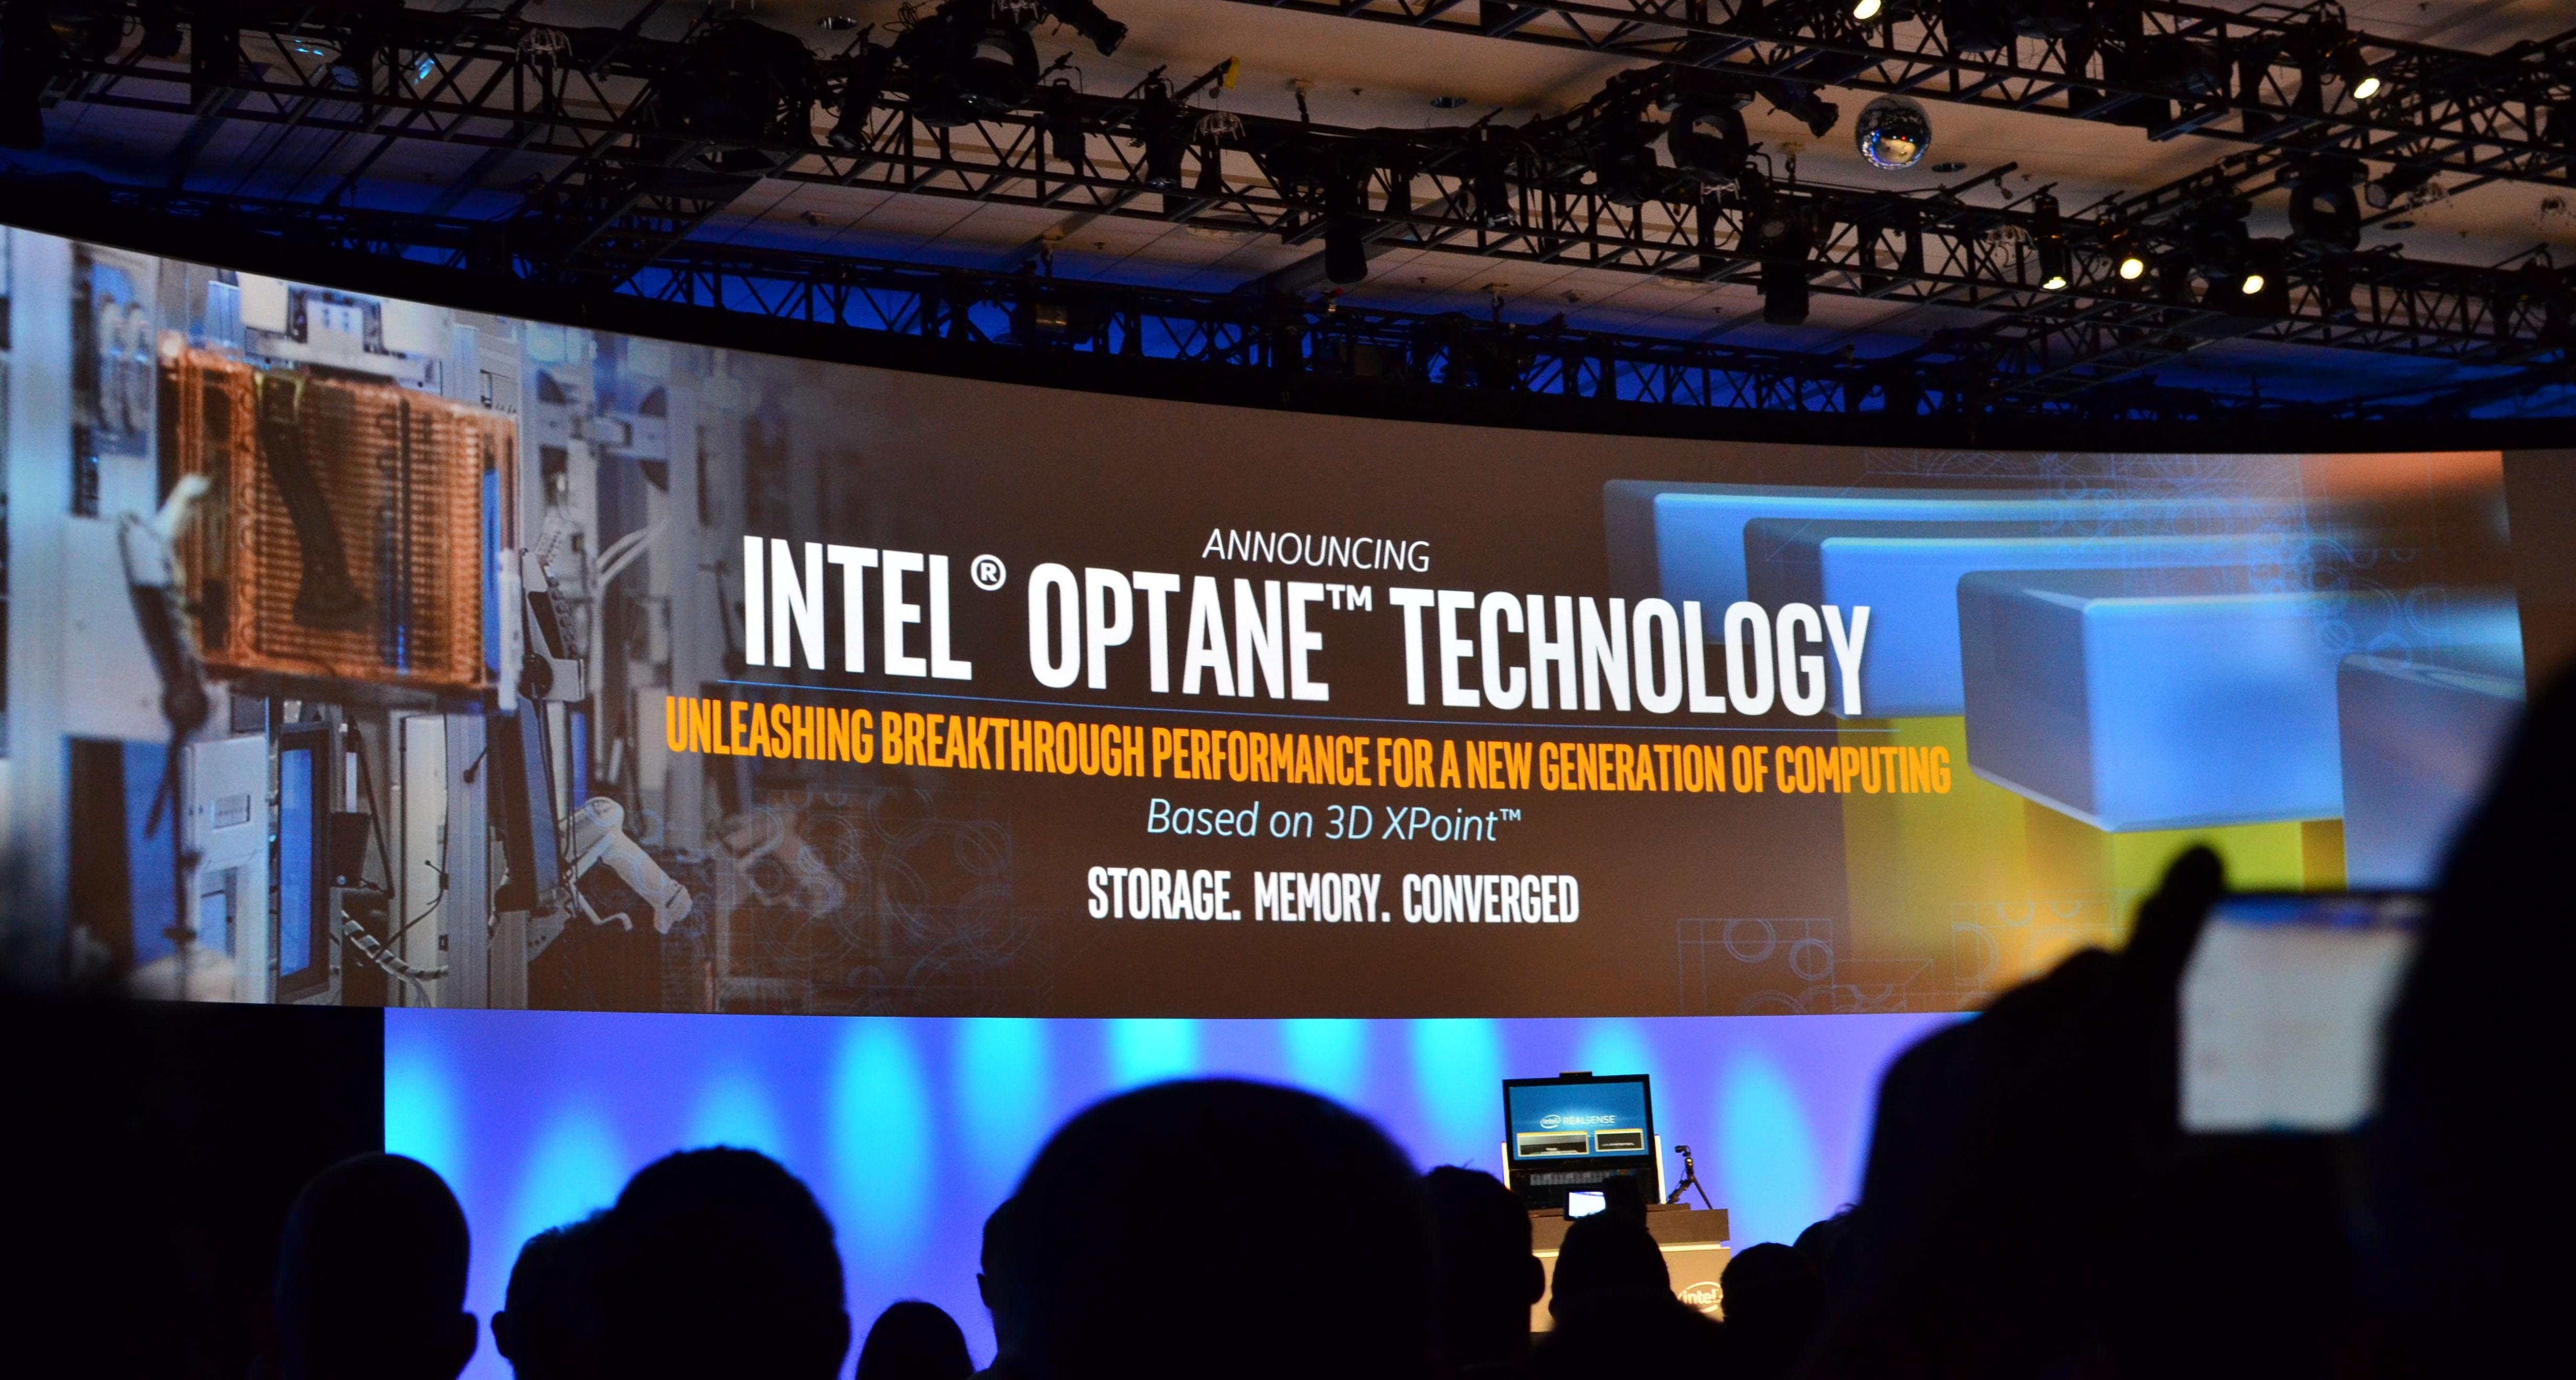 Intel Optane con la tecnología 3D XPoint está en la vanguardia de los dispositivos de almacenamiento. Aún así, para que se consolide todavía se necesita mucho avance tecnológico.